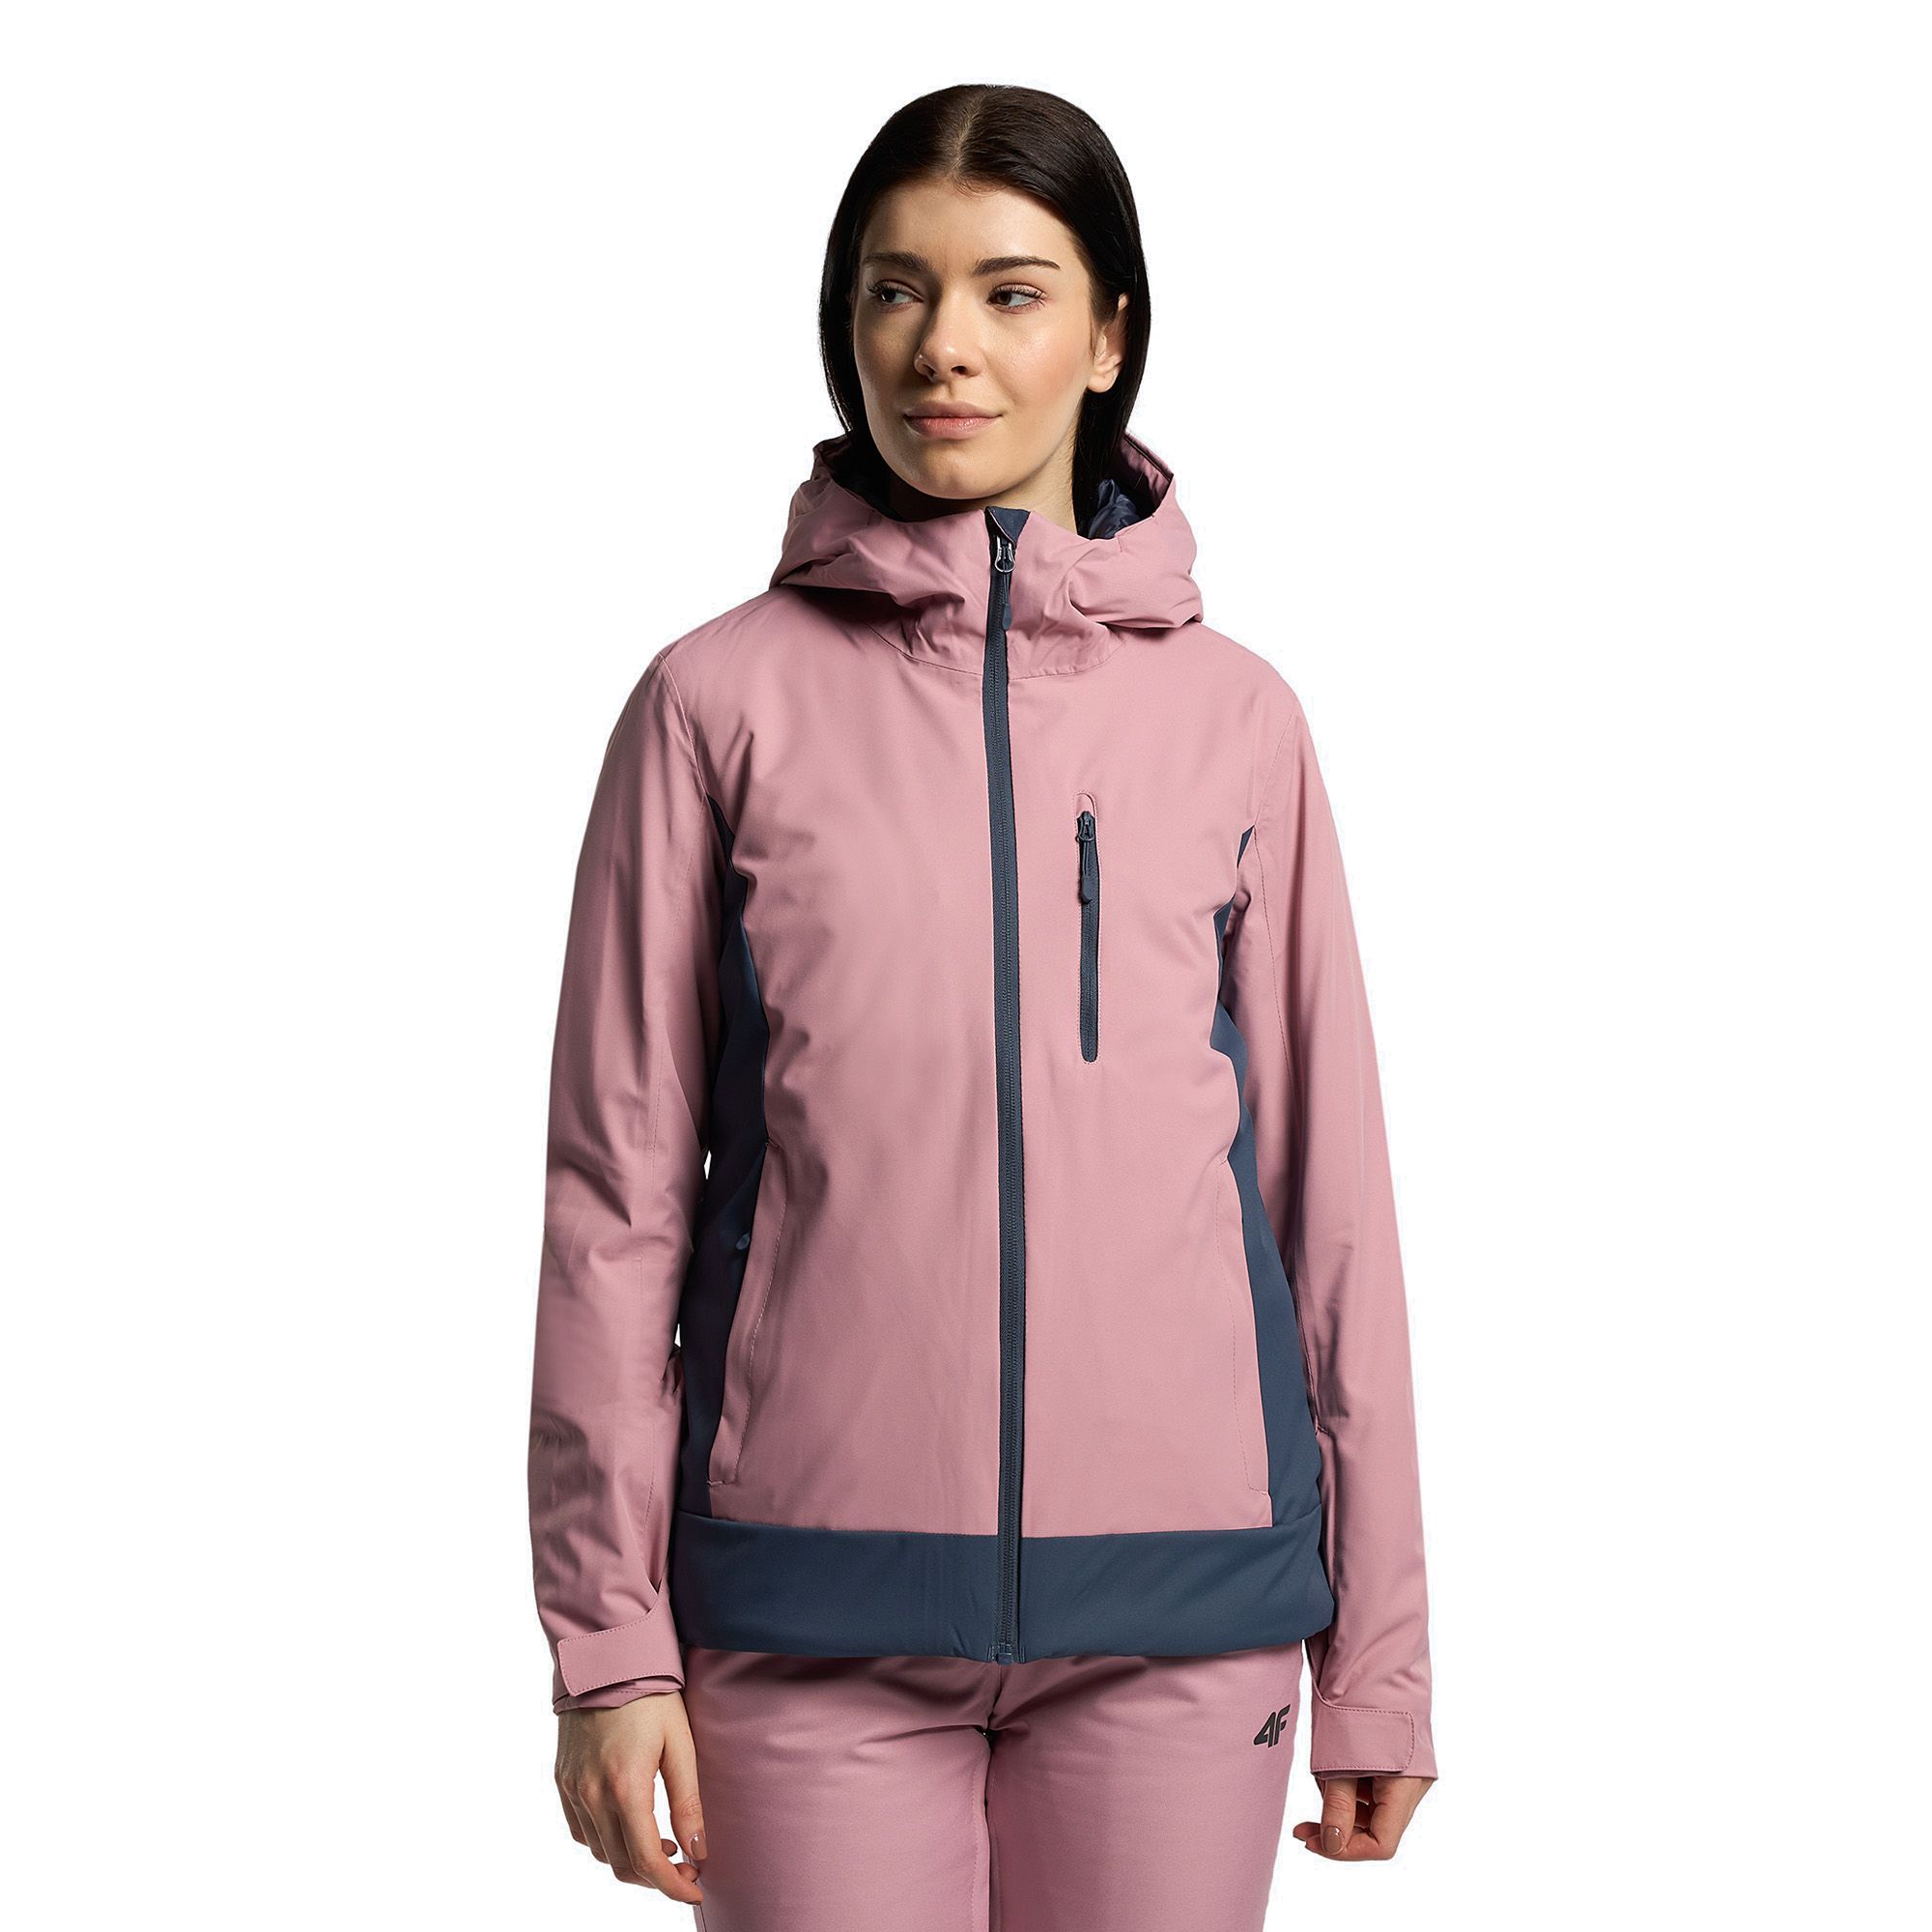 Kurtka narciarska damska 4F różowa KUDN002 XS